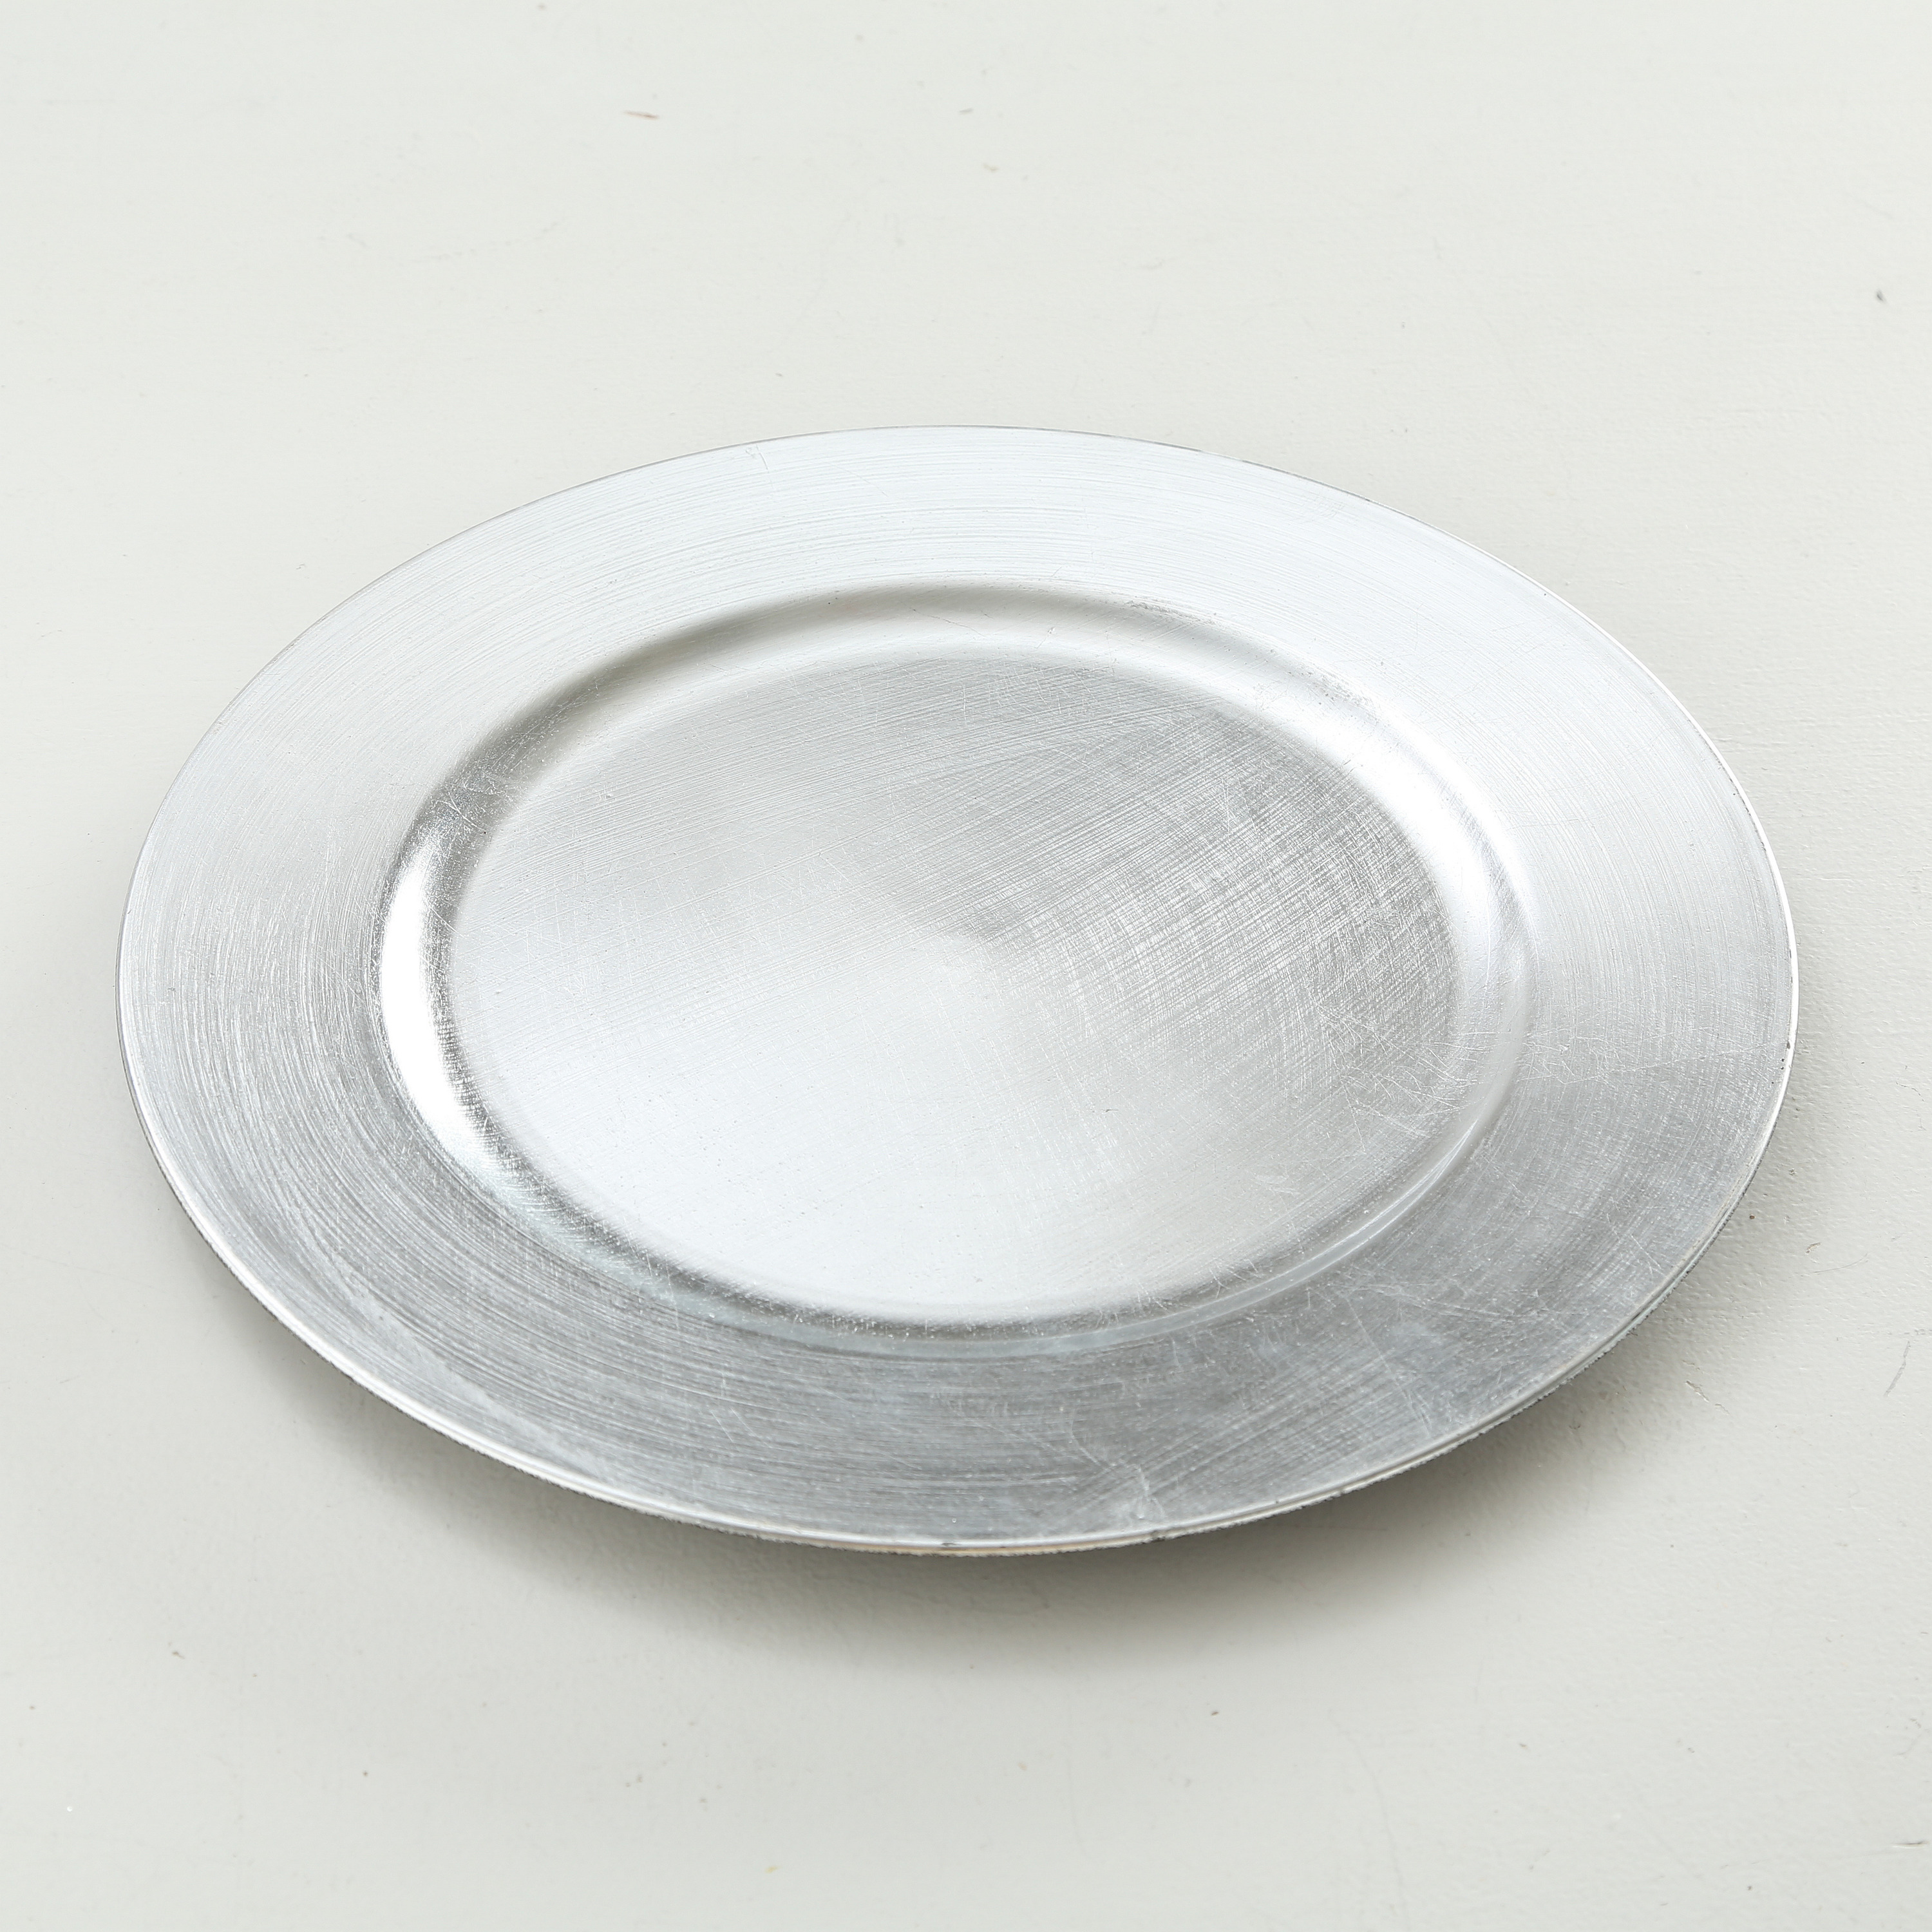 1x Diner onderborden zilver 33 cm rond